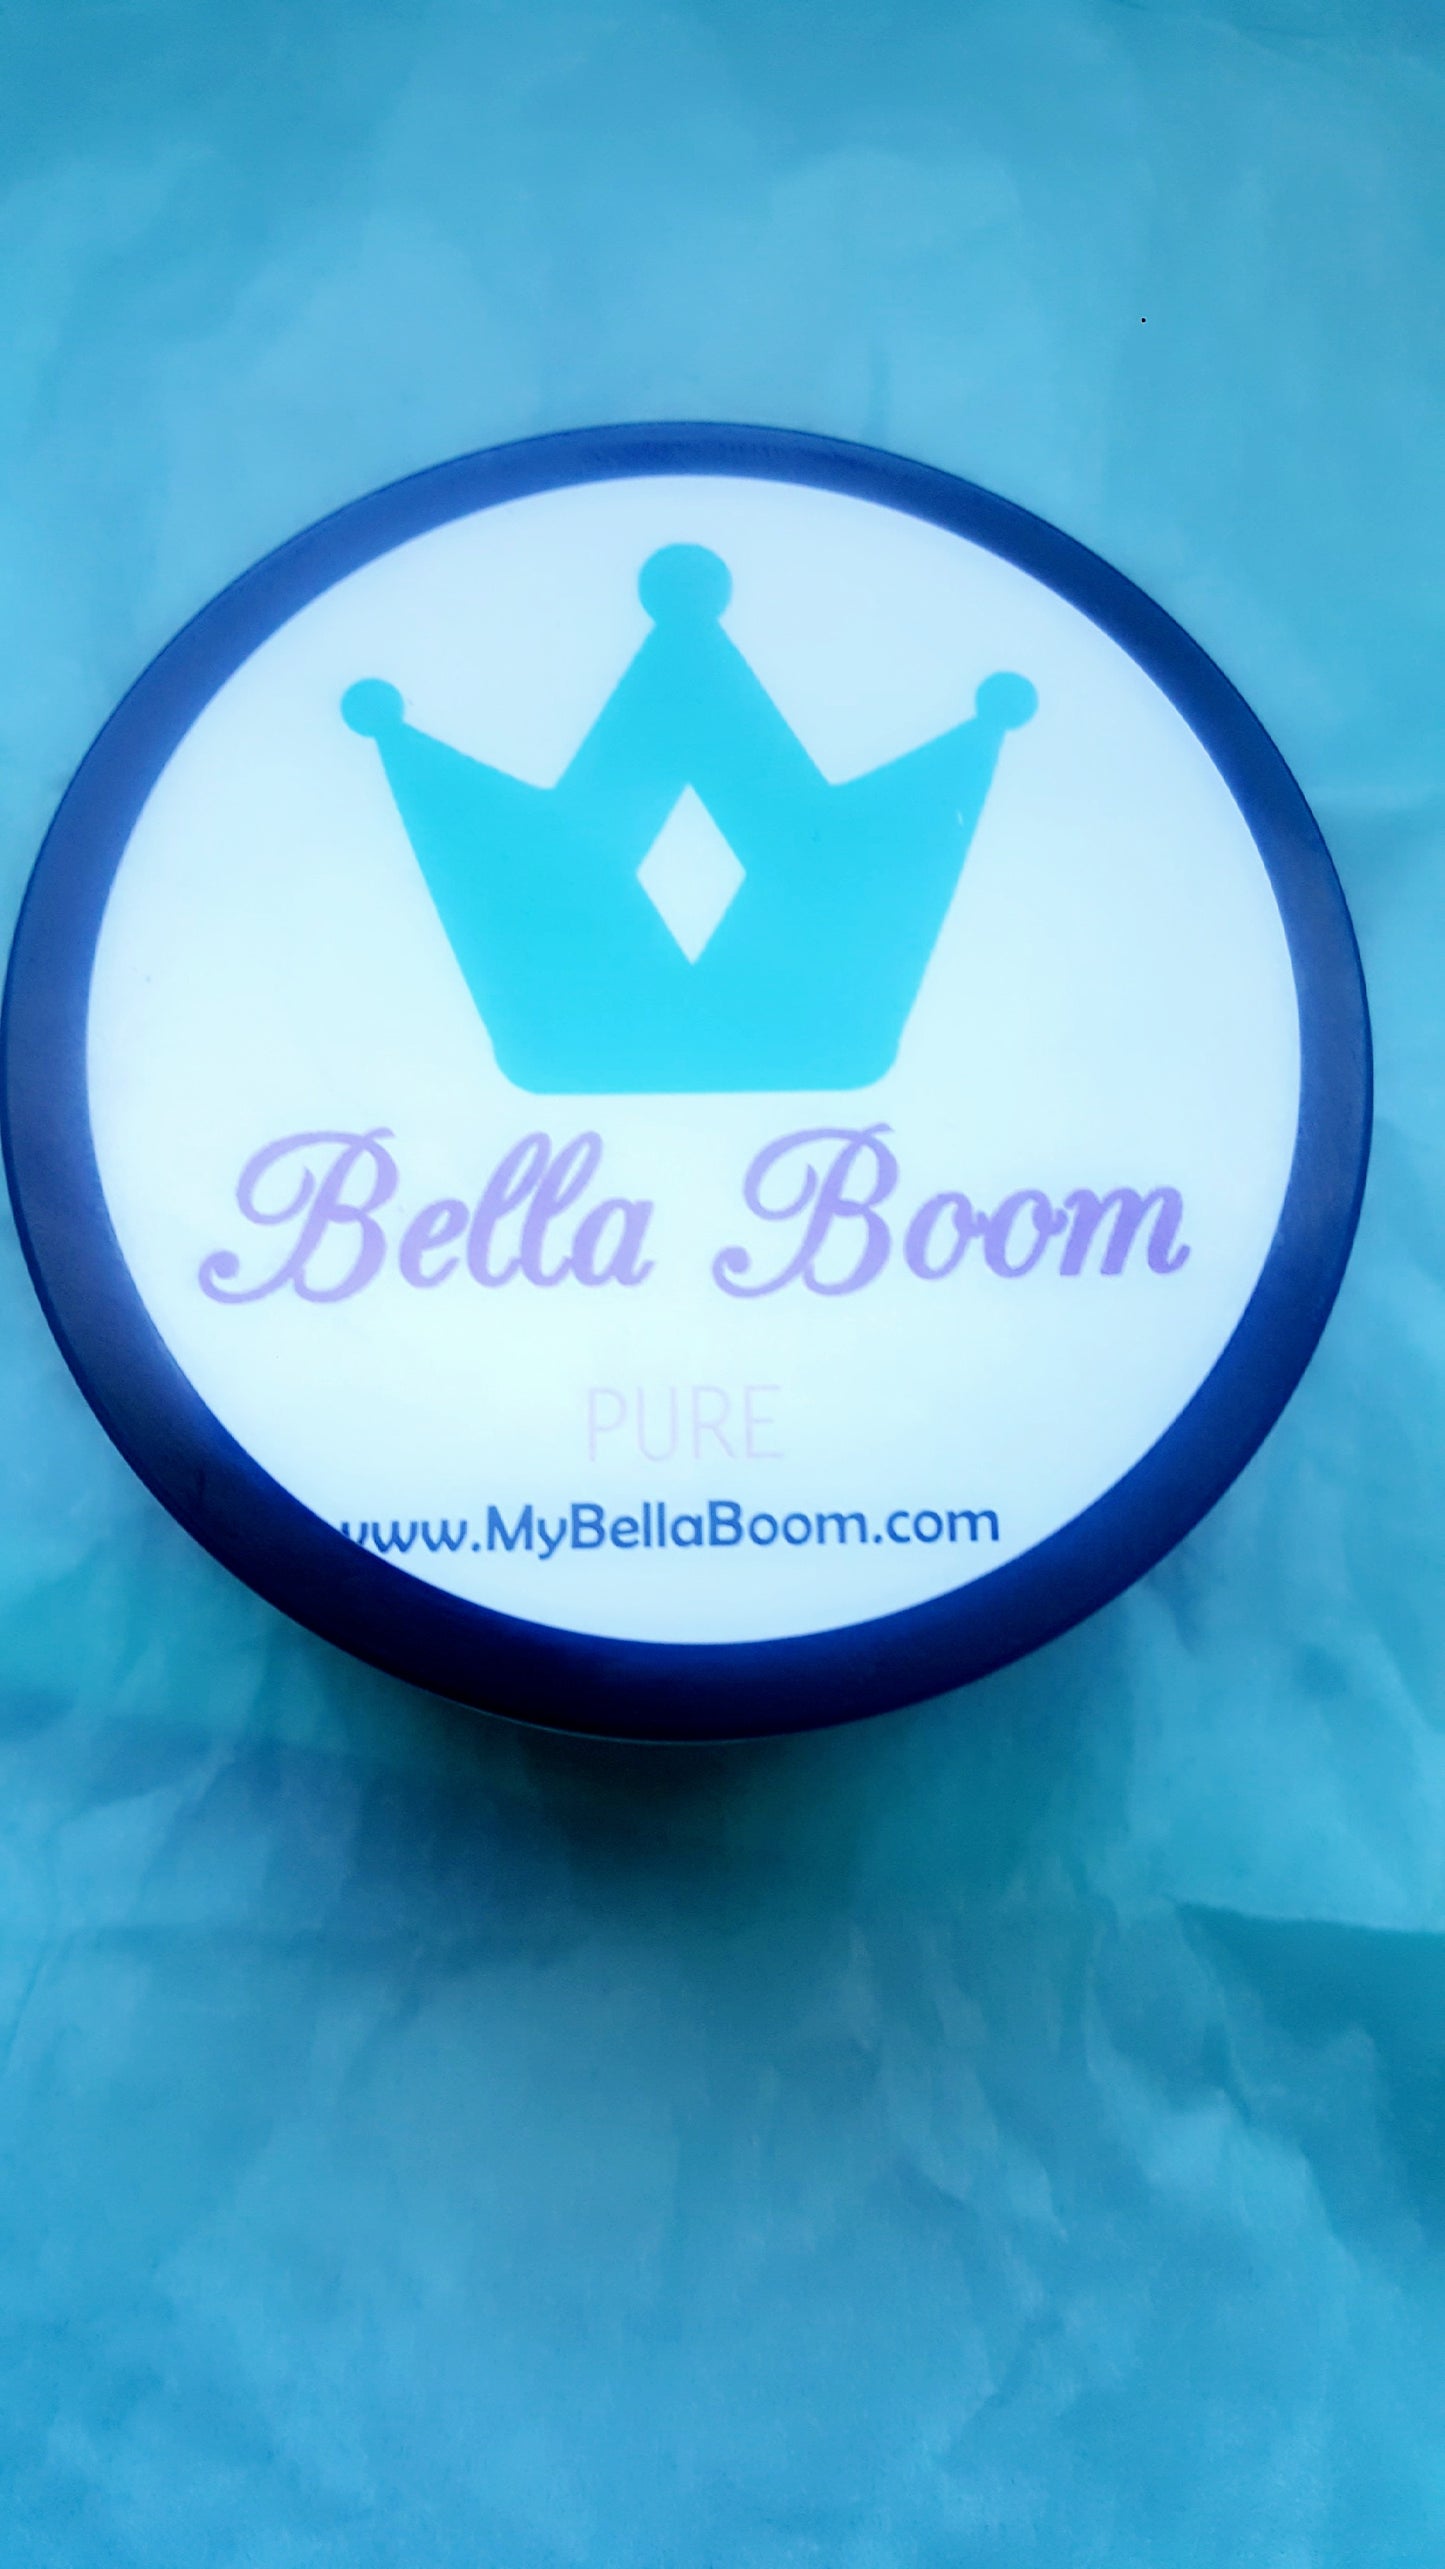 Bella Boom Pure